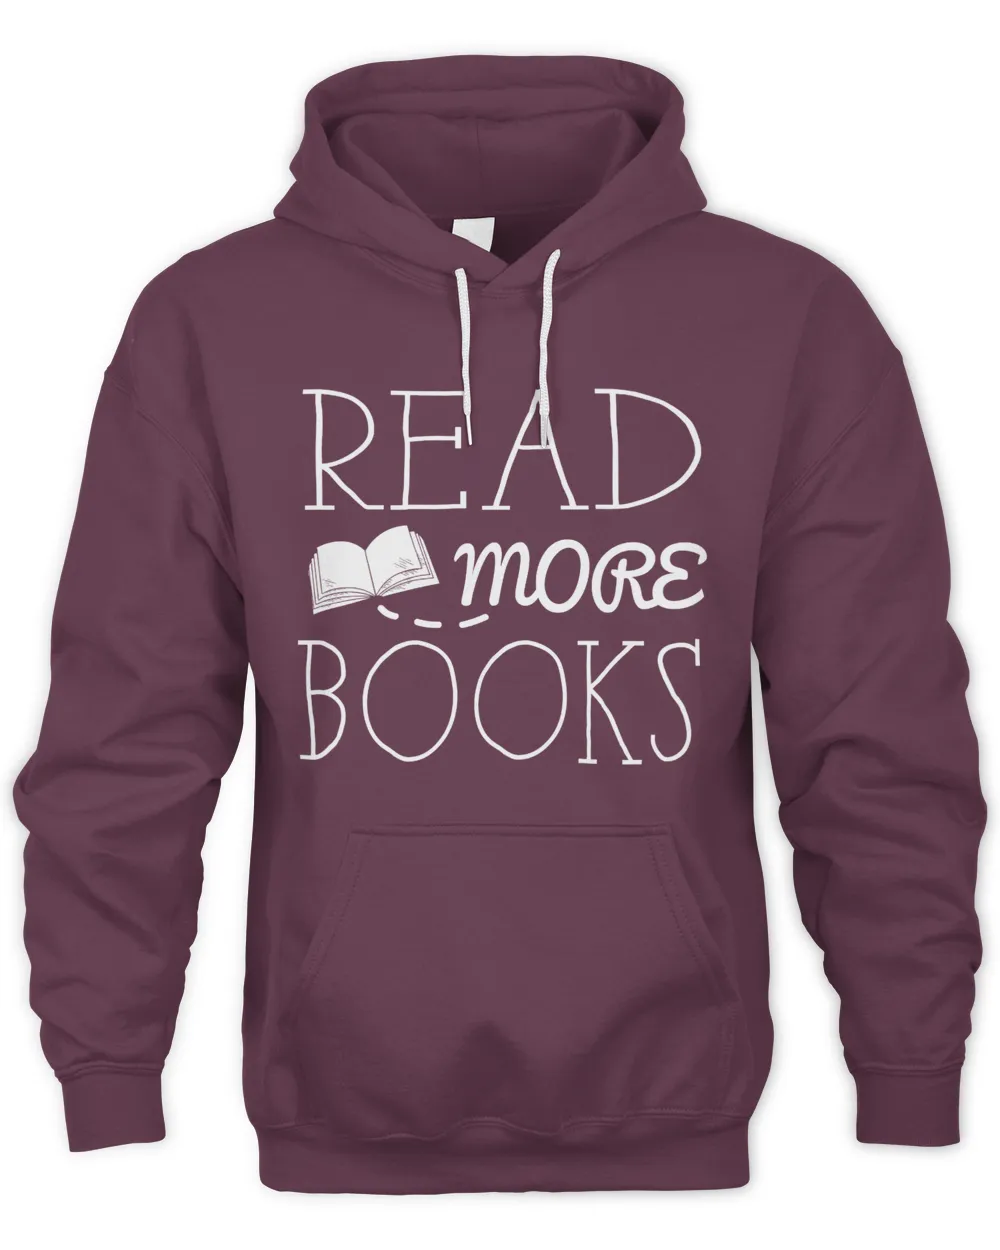 Read more books